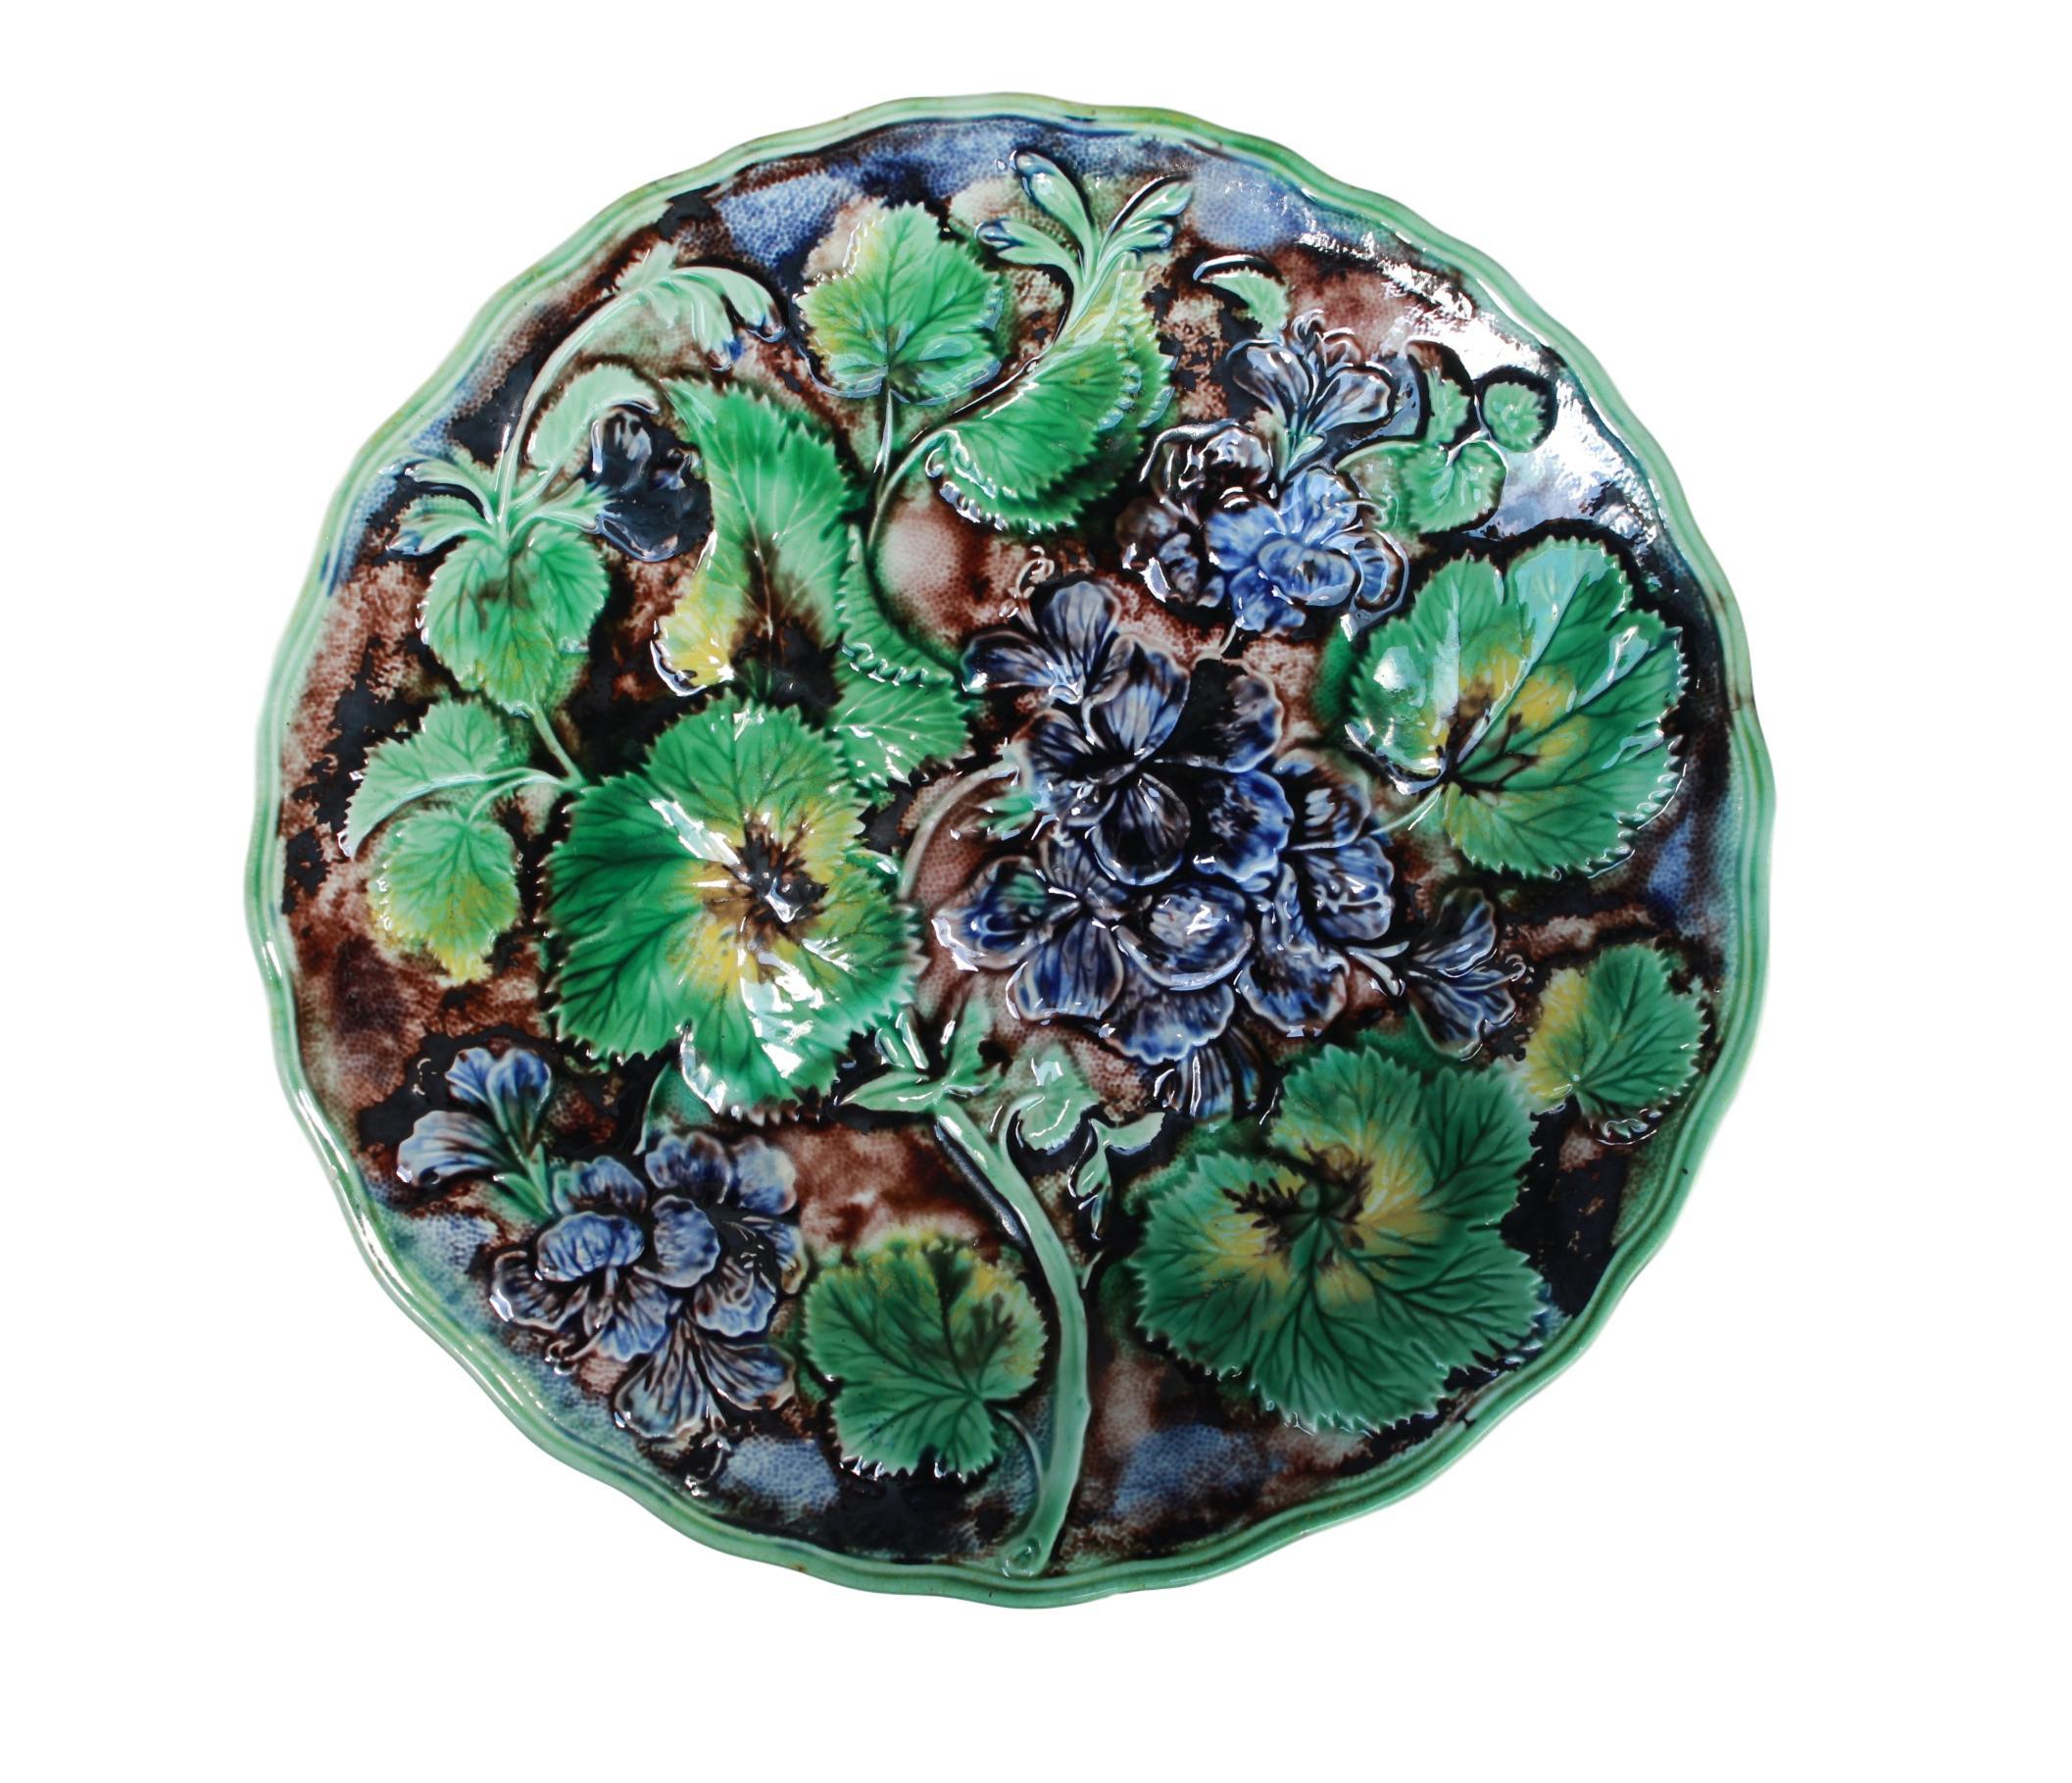 Samuel Alcock & Co. Assiette à géraniums en majolique à glaçure violette, anglaise, vers 1860, moulée de fleurs de géraniums à glaçure violette, de tiges et de feuilles à glaçure verte, jaune et brune, réservée sur un fond de faux bois dans un bord